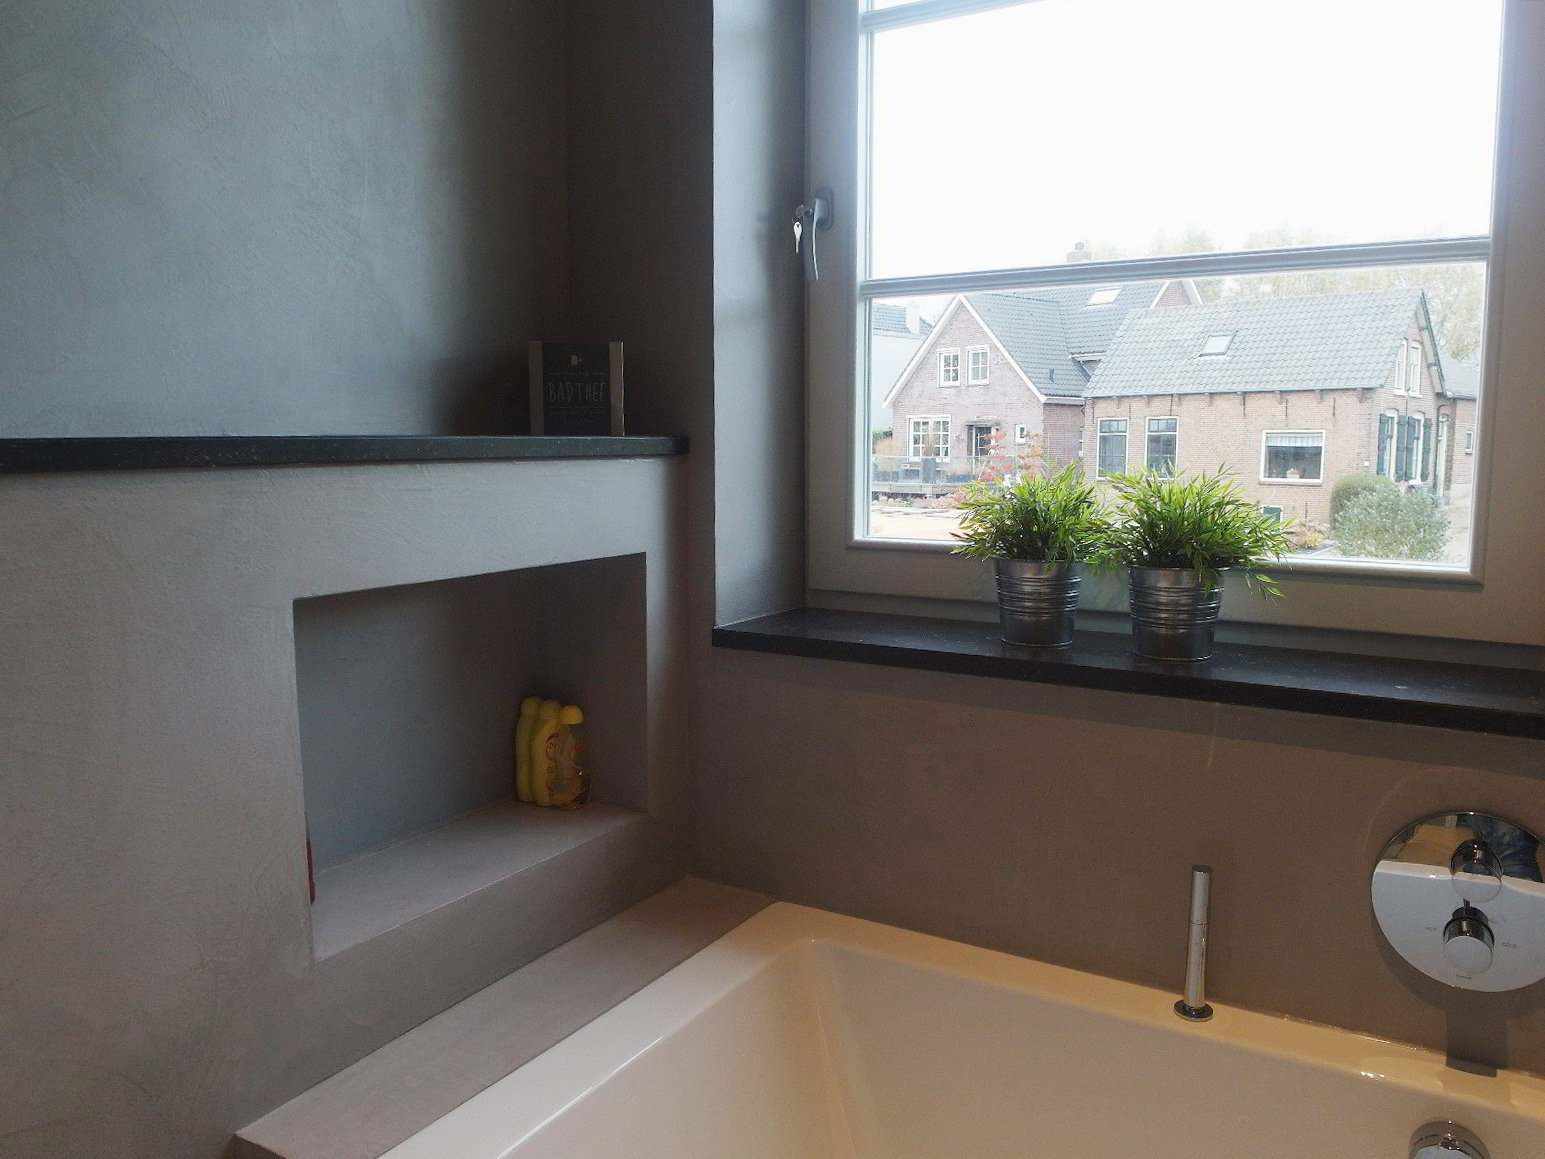 Mikrocement na steni, tleh in pohištvu kopalnice na Nizozemskem v projektu Decas.